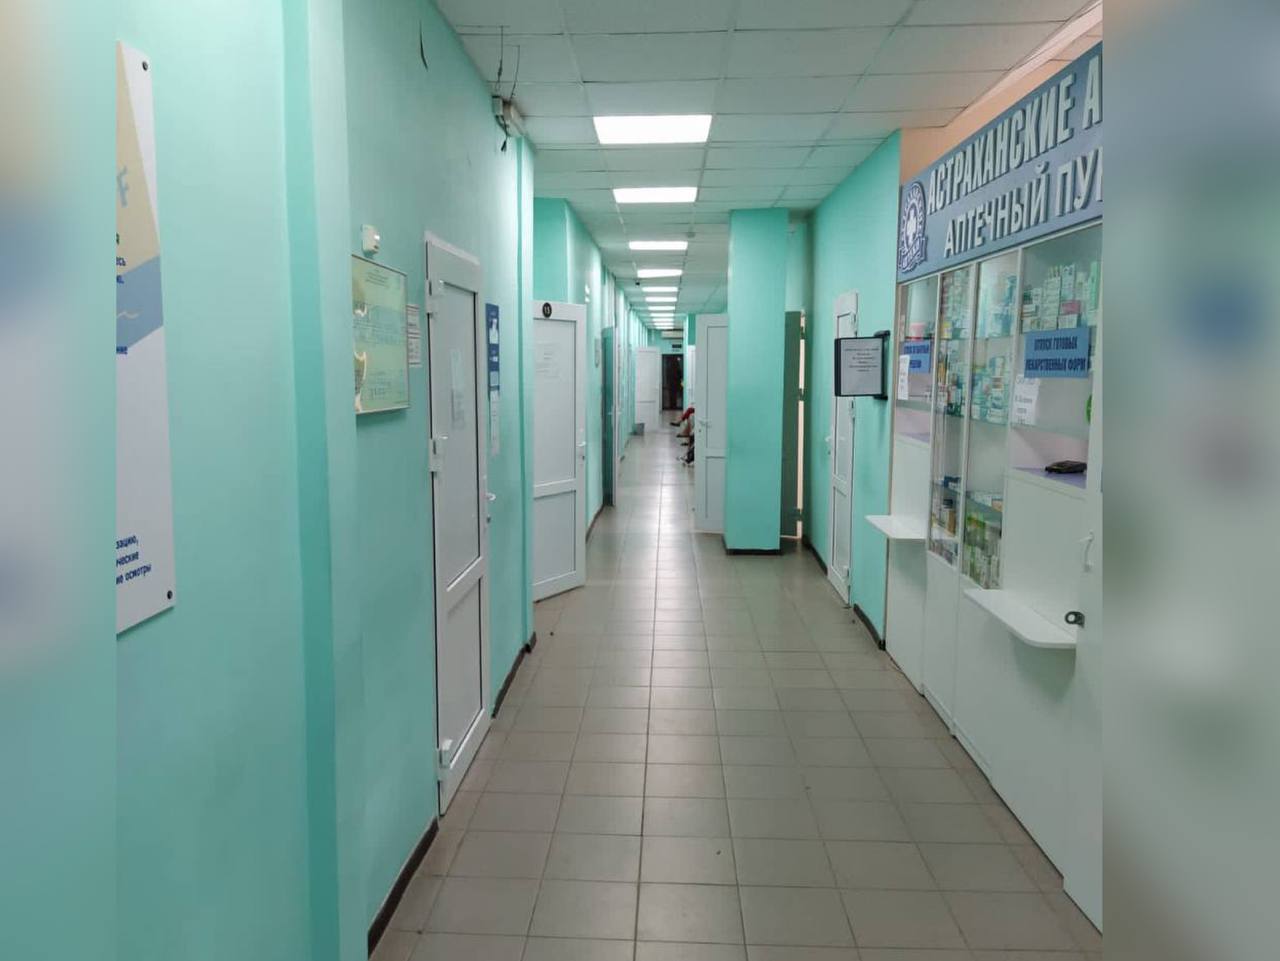 Директора «Стройснаб» дисквалифицировали за неоконченный ремонт в астраханской поликлинике 